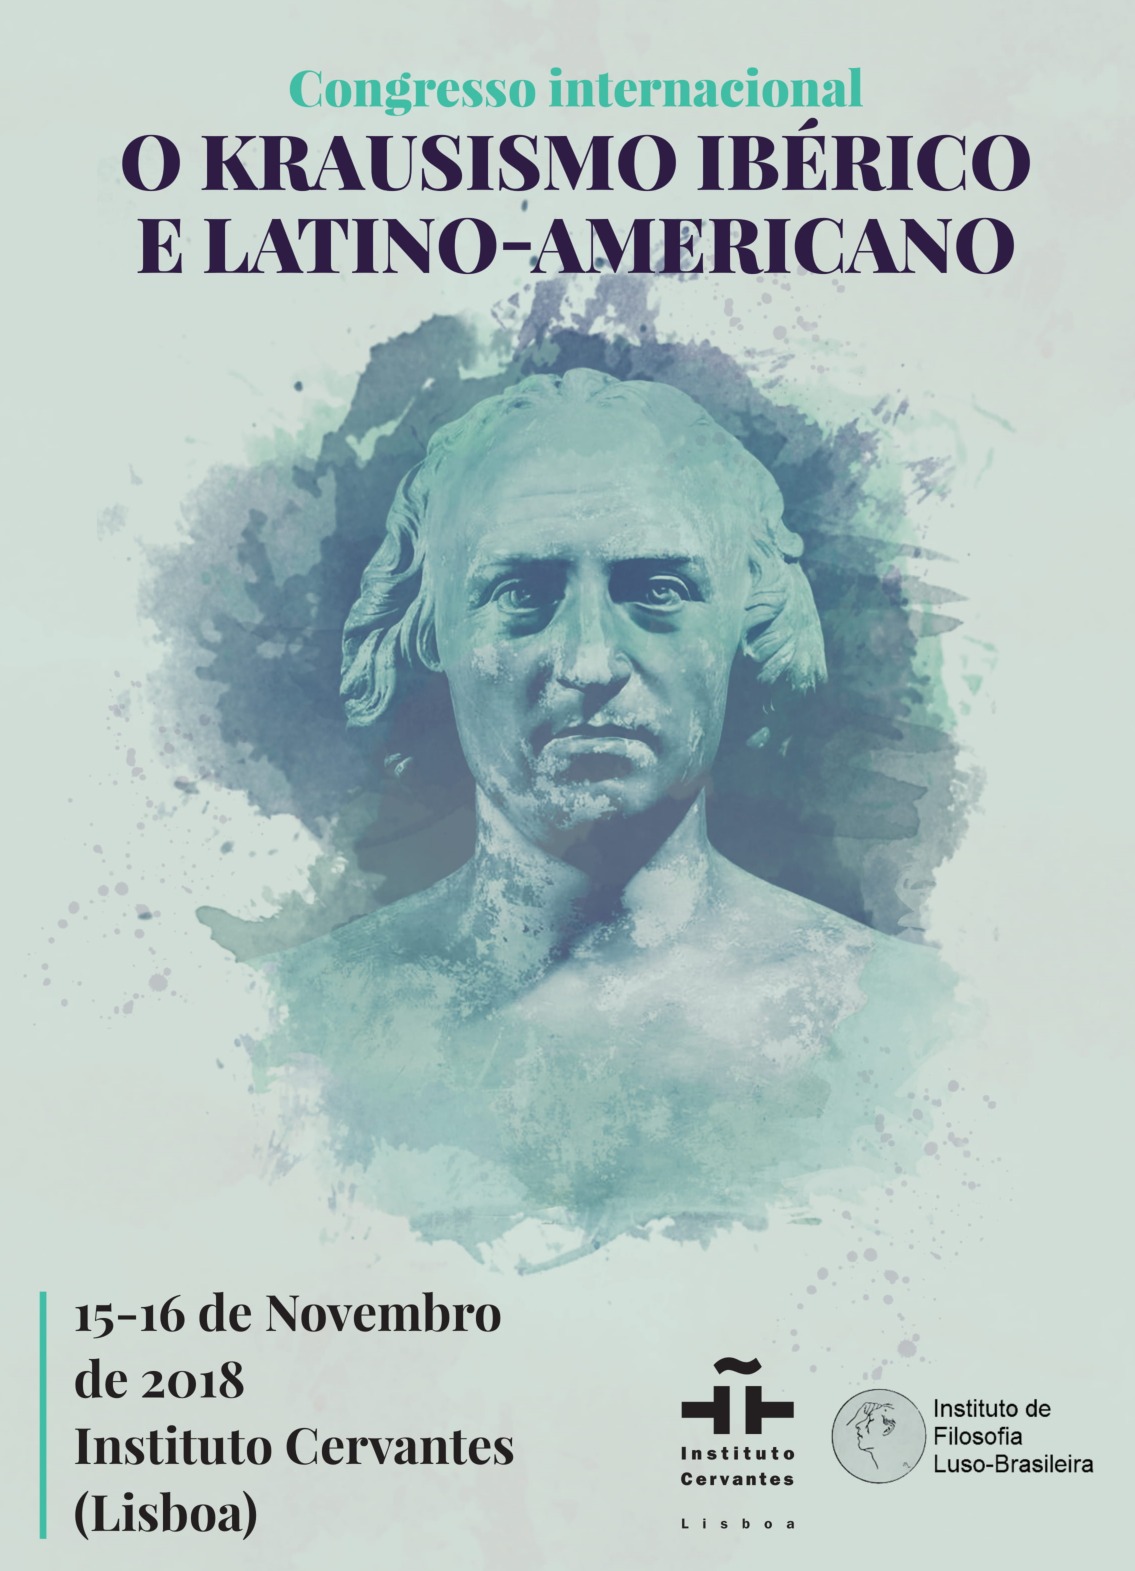 Congresso Internacional "O Krausismo Ibérico e Latino-Americano"